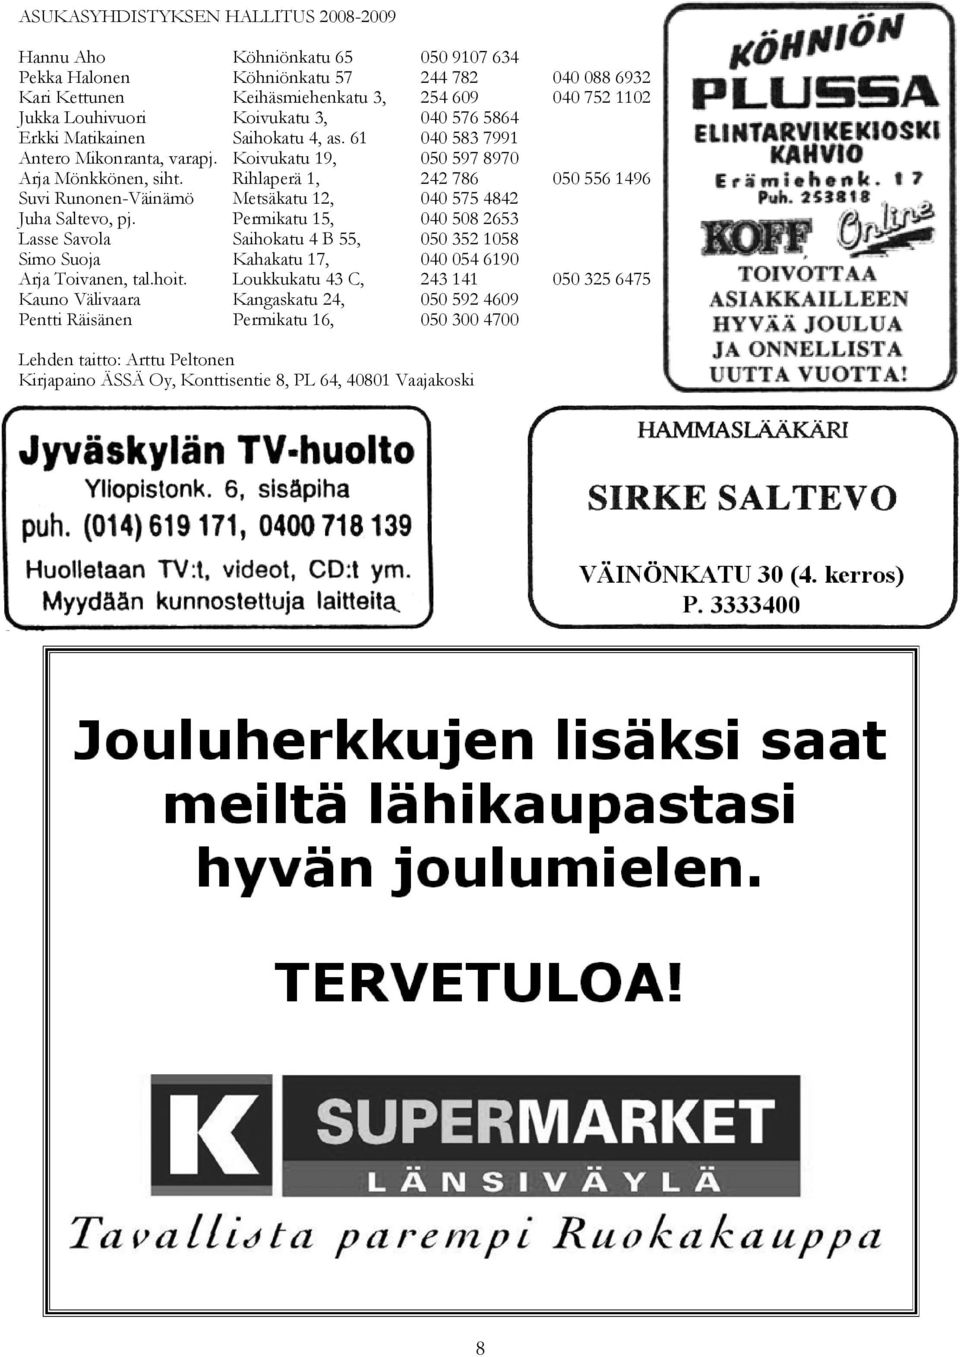 Rihlaperä 1, 242 786 050 556 1496 Suvi Runonen-Väinämö Metsäkatu 12, 040 575 4842 Juha Saltevo, pj.